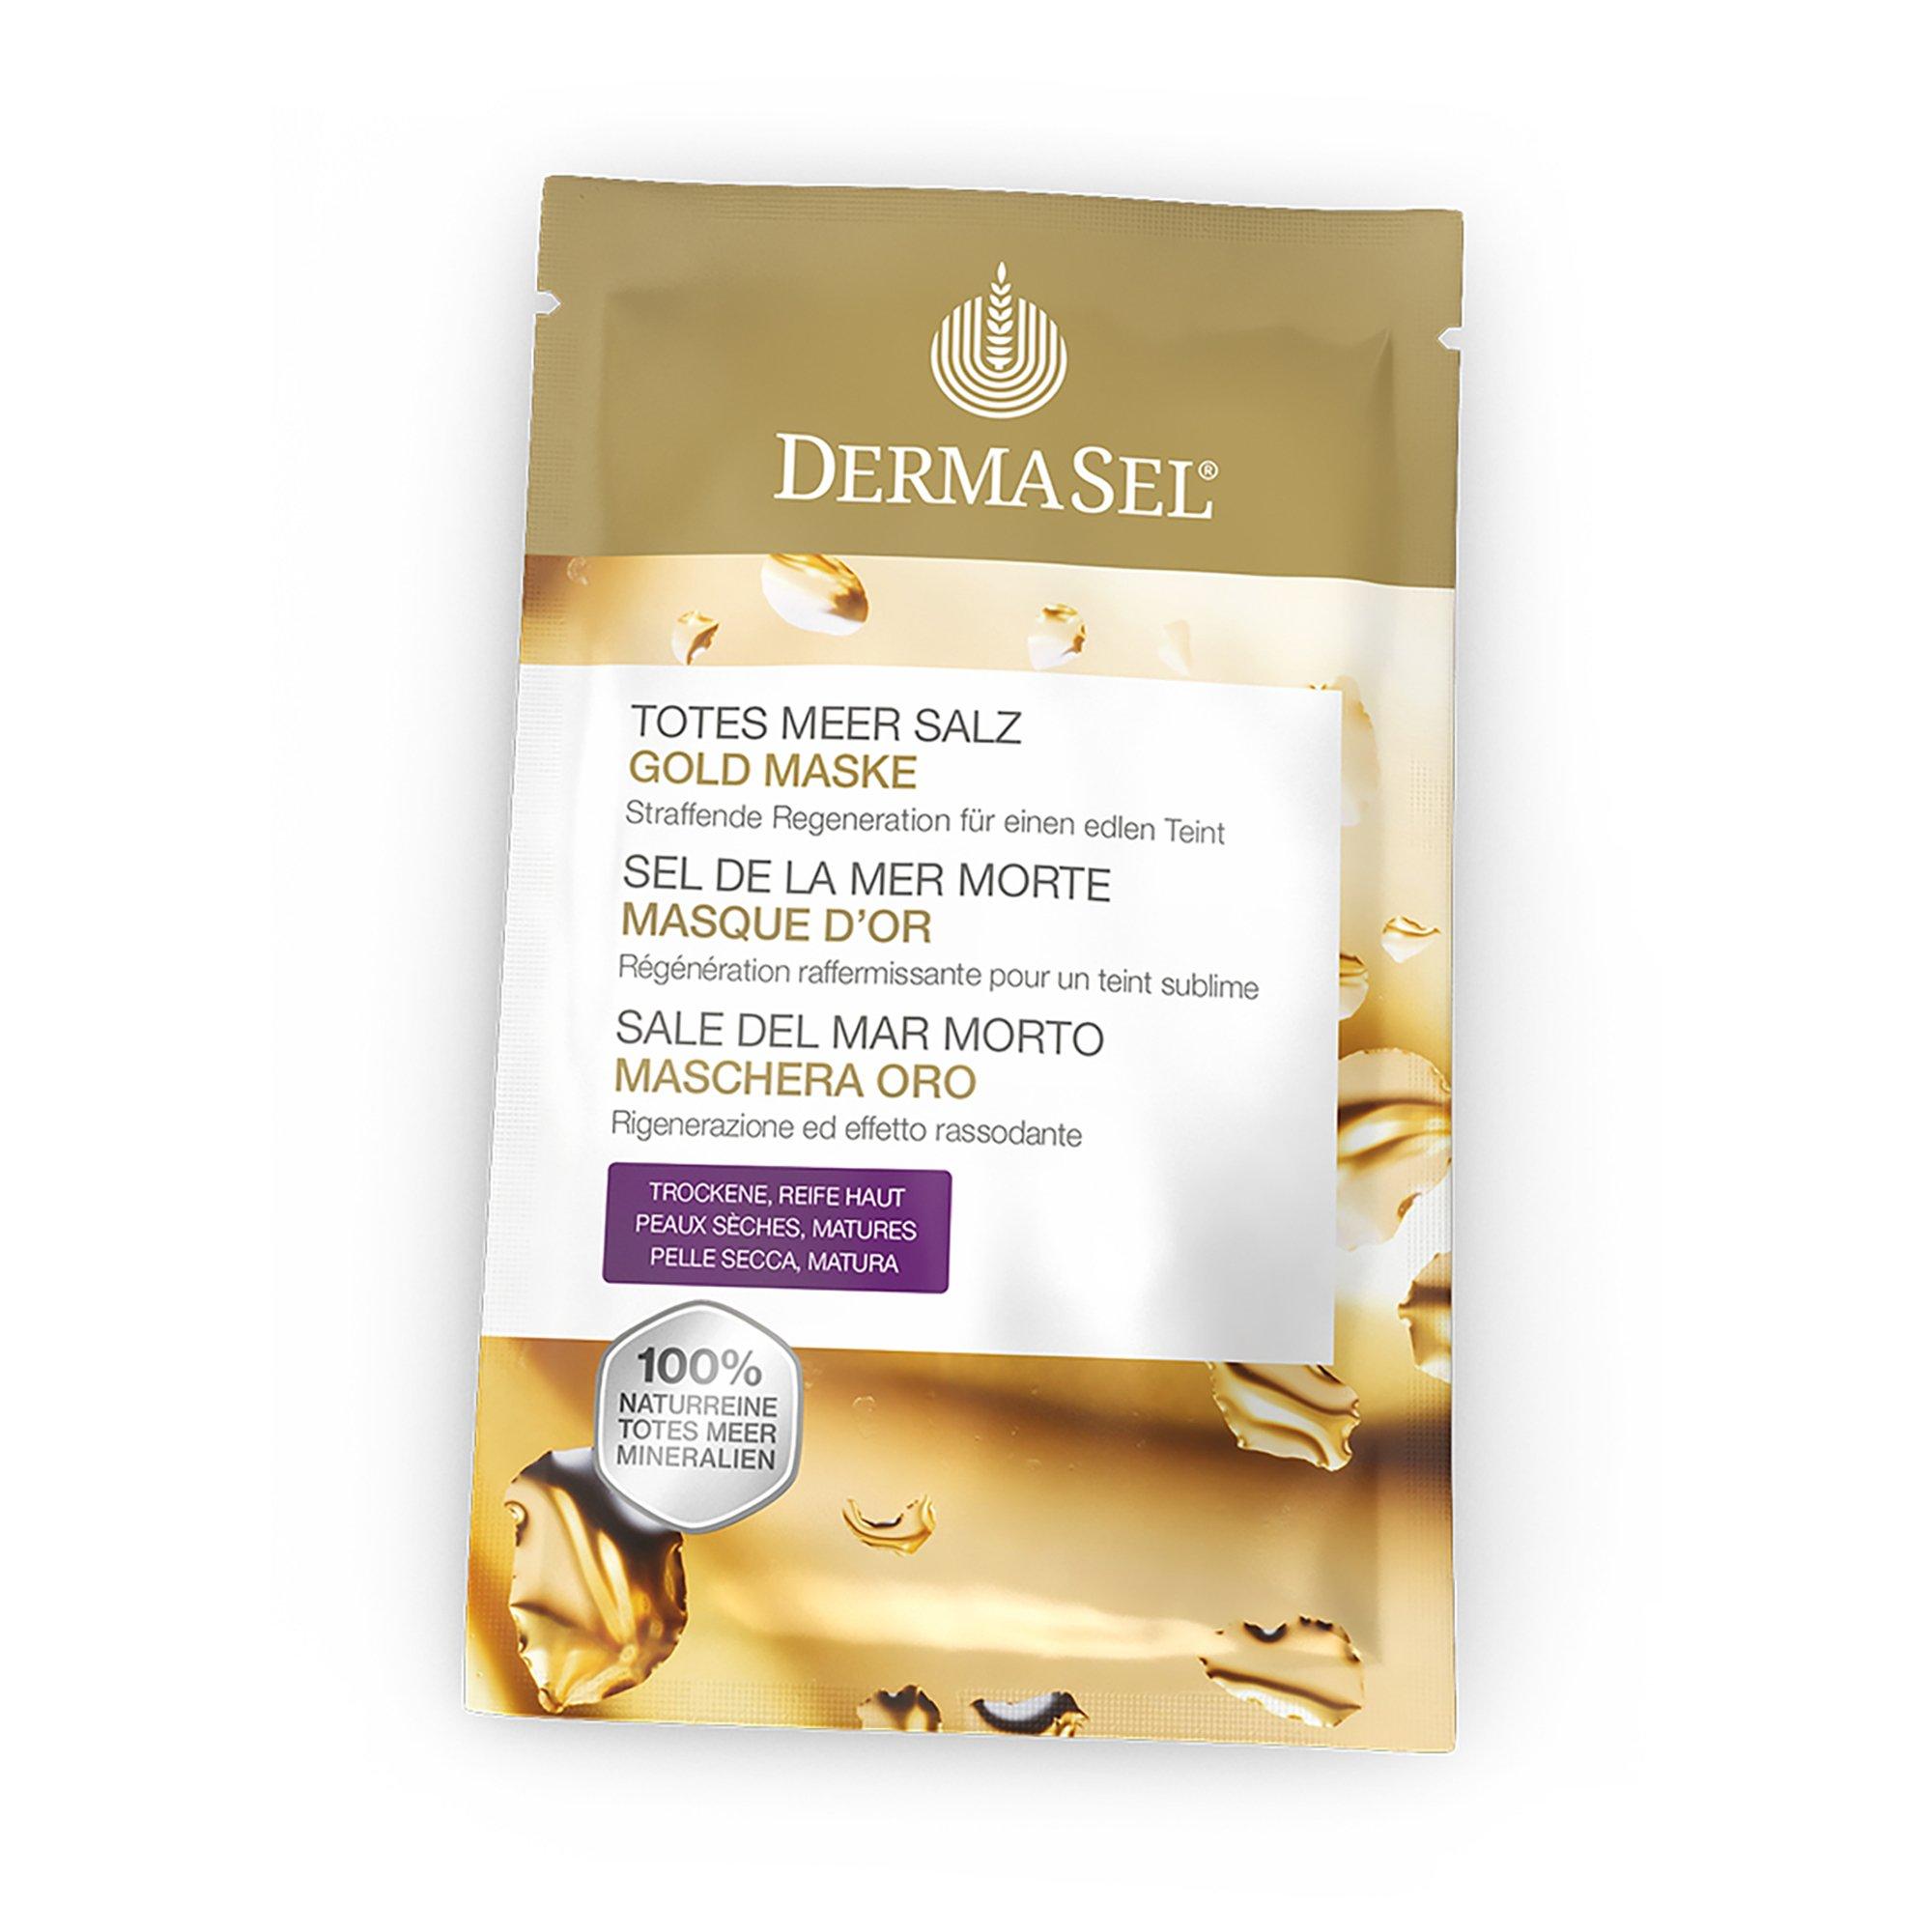 Image of DERMASEL Exclusive Maske Gold Totes Meer Salz Gold Maske - 12ml